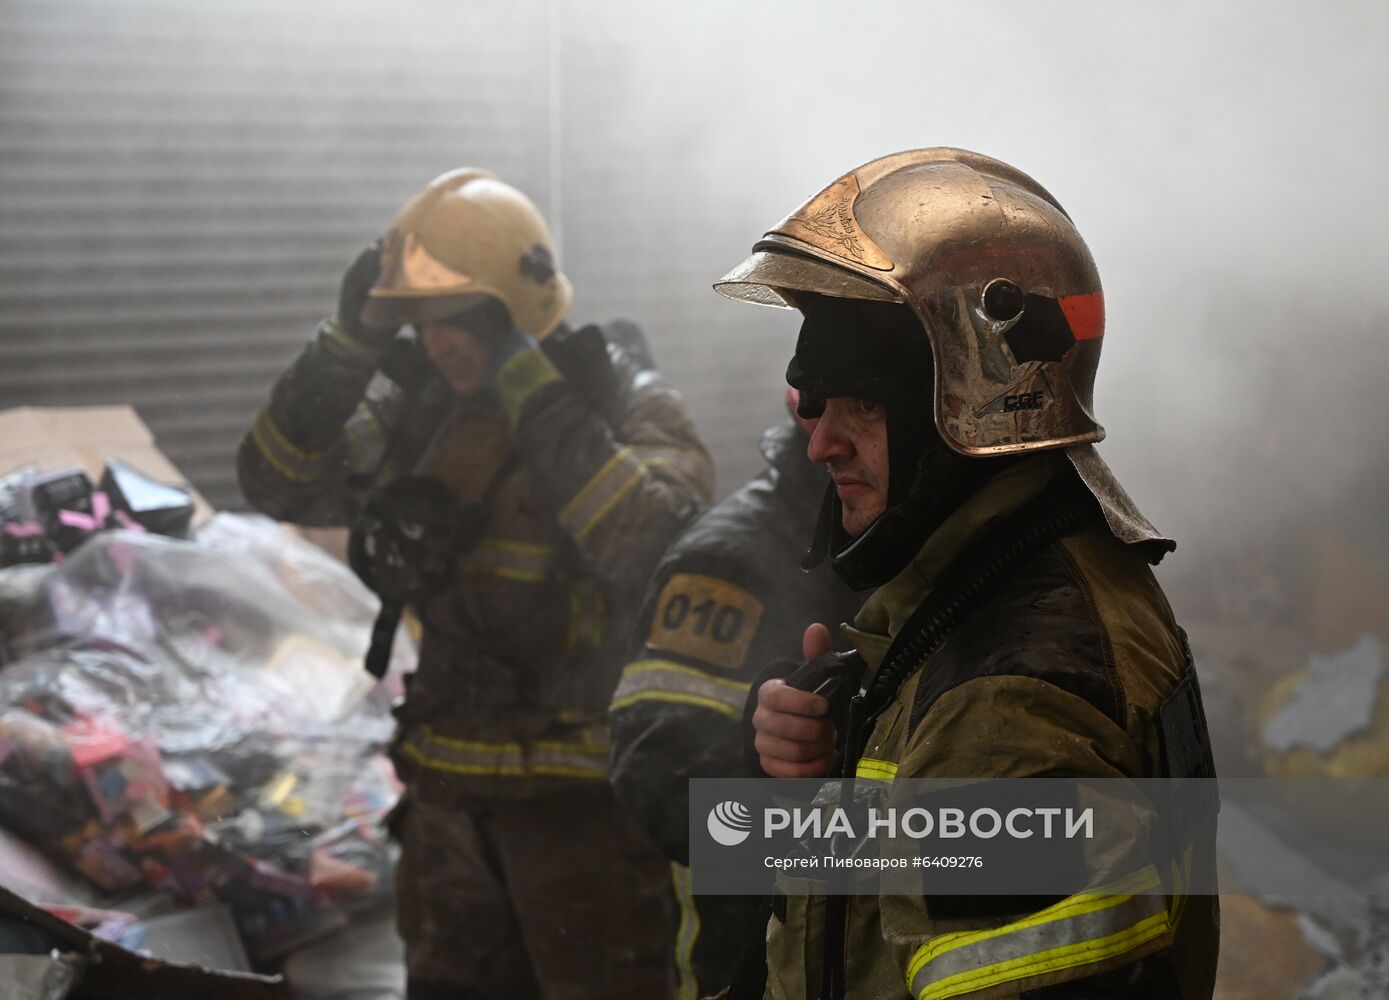 Павильон с пиротехникой горит в Ростове-на-Дону